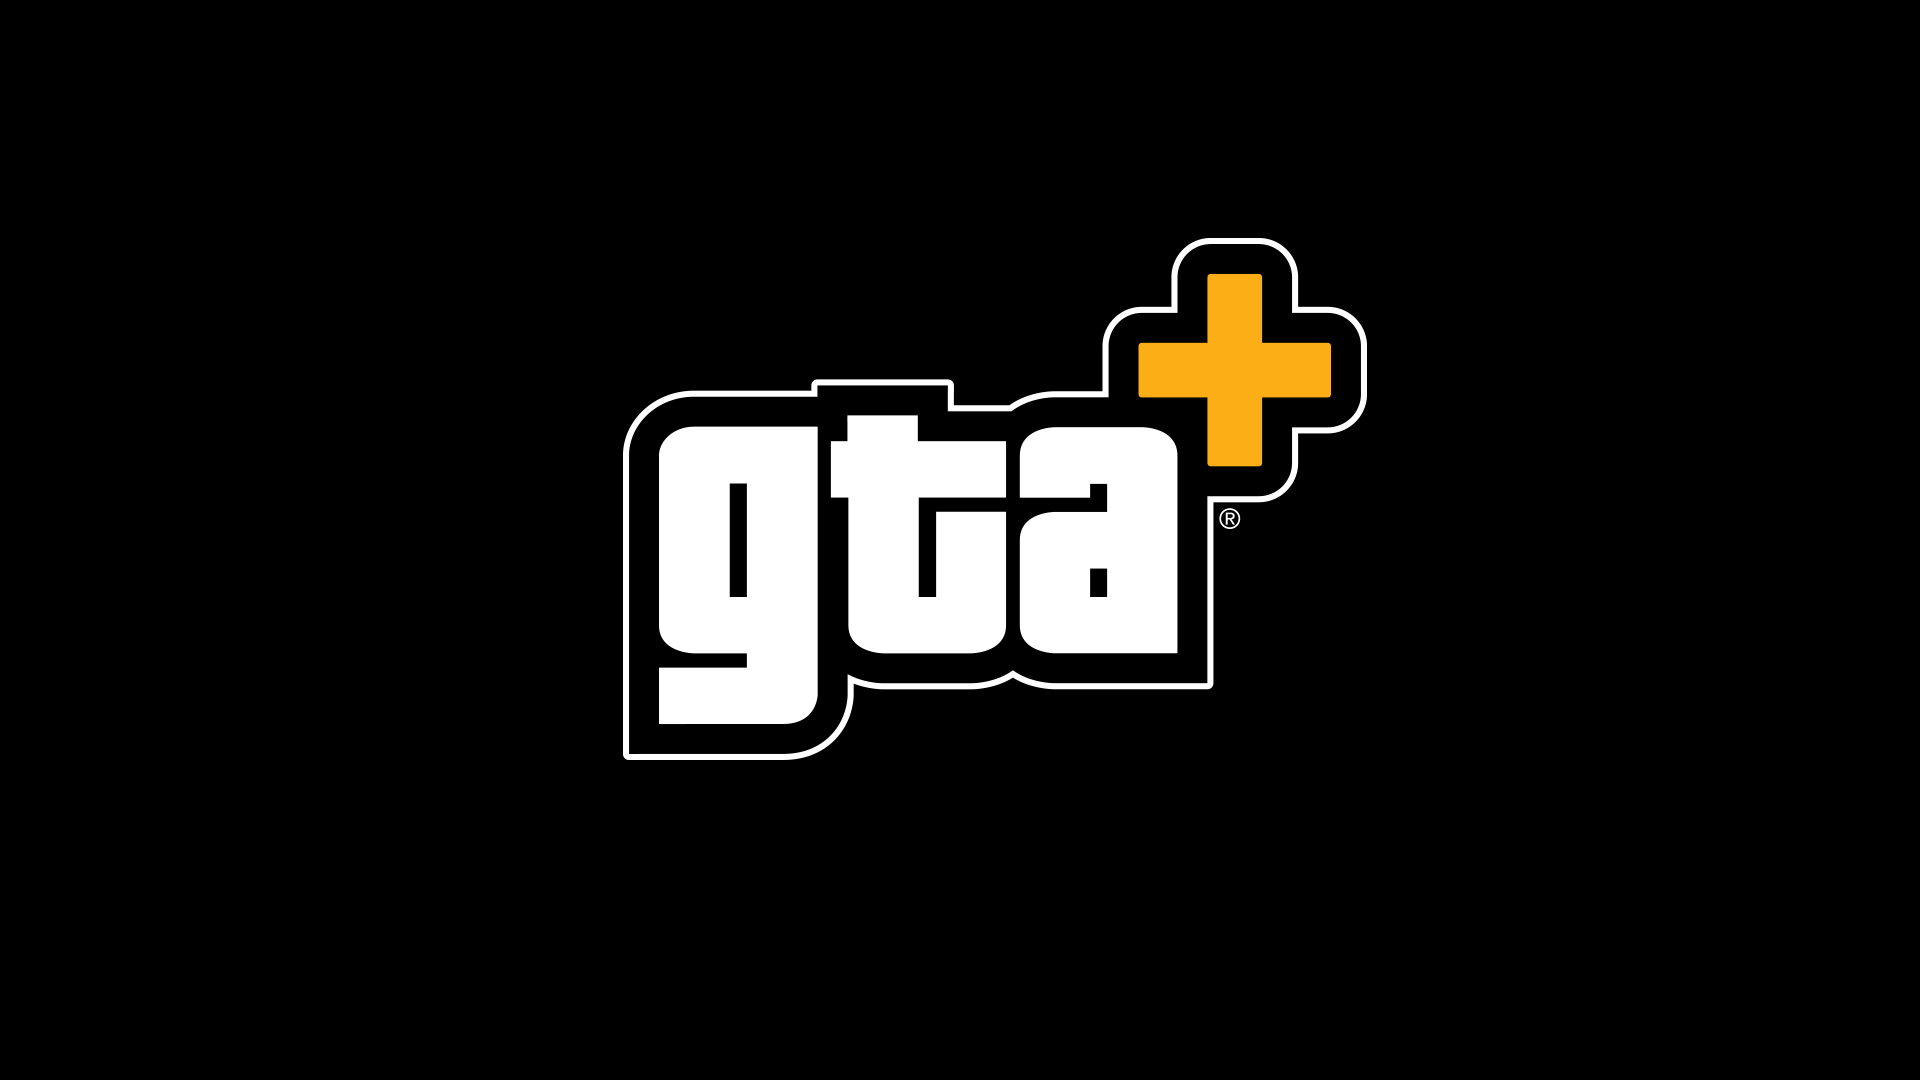 Para obter mais informações sobre os benefícios do GTA+ mais recentes, visite https://rockstargames.com/gtaplus